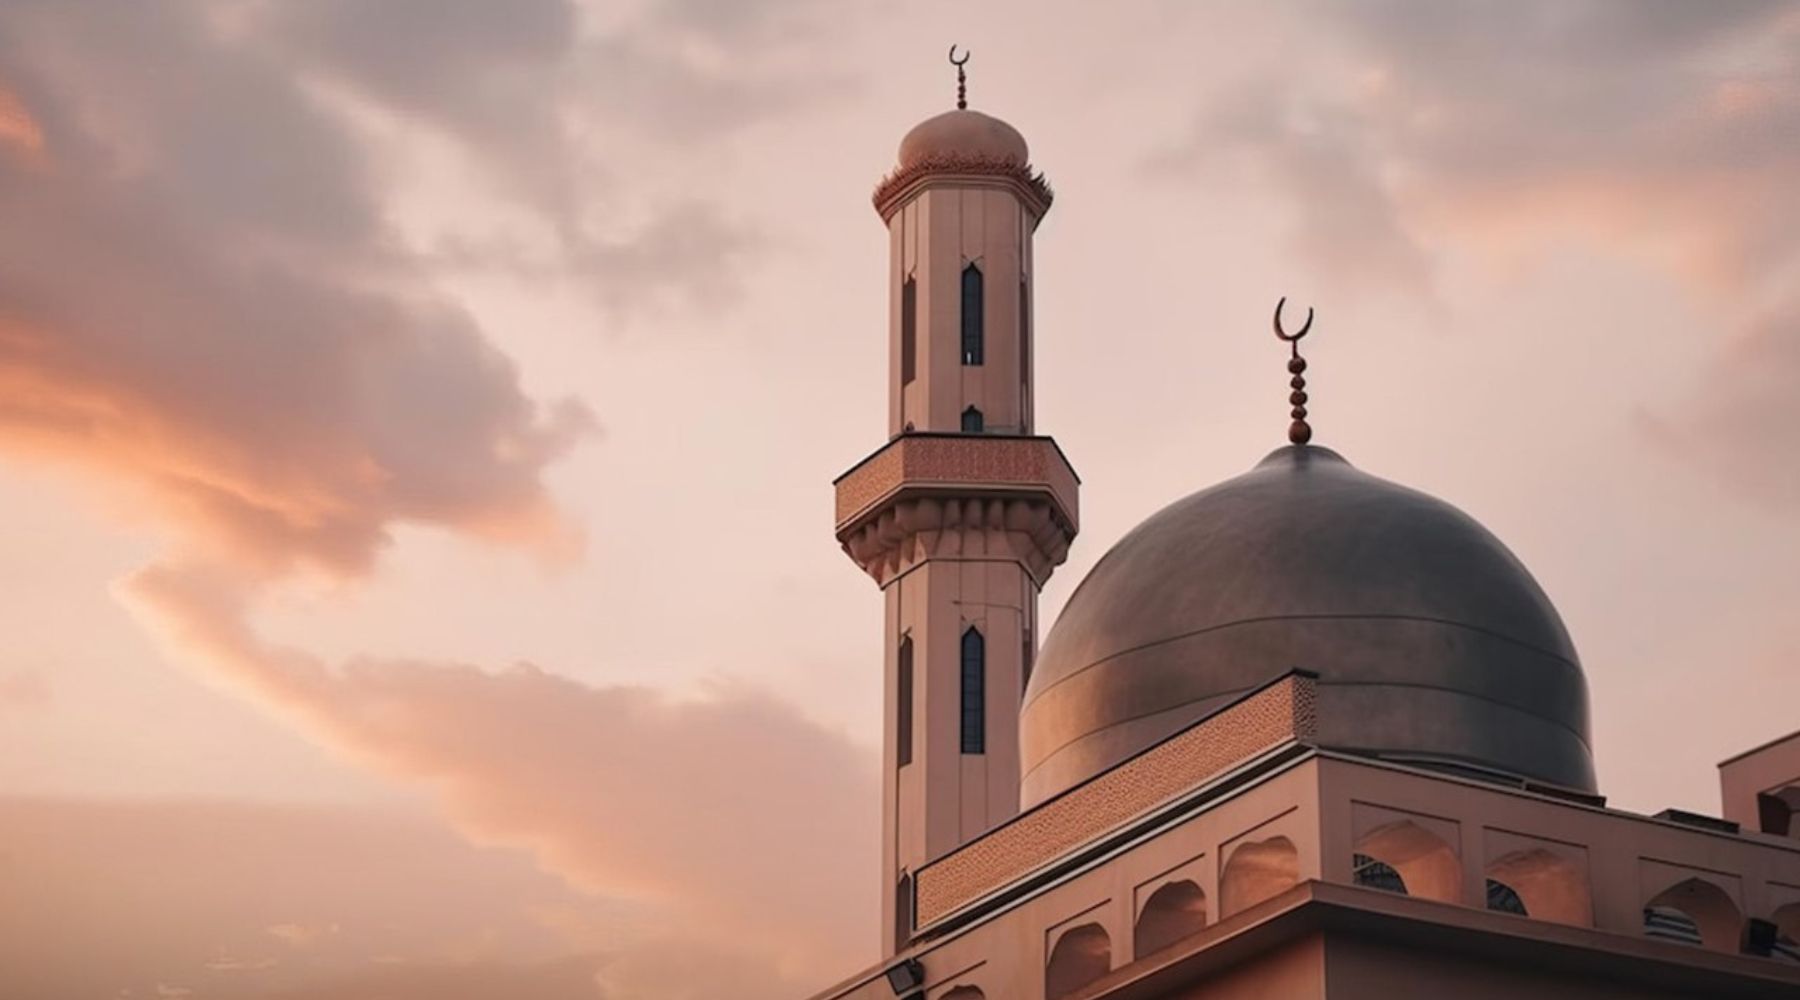 Kumpulan Doa Sehari-hari dalam Islam: Membawa Ketenangan dan Berkah